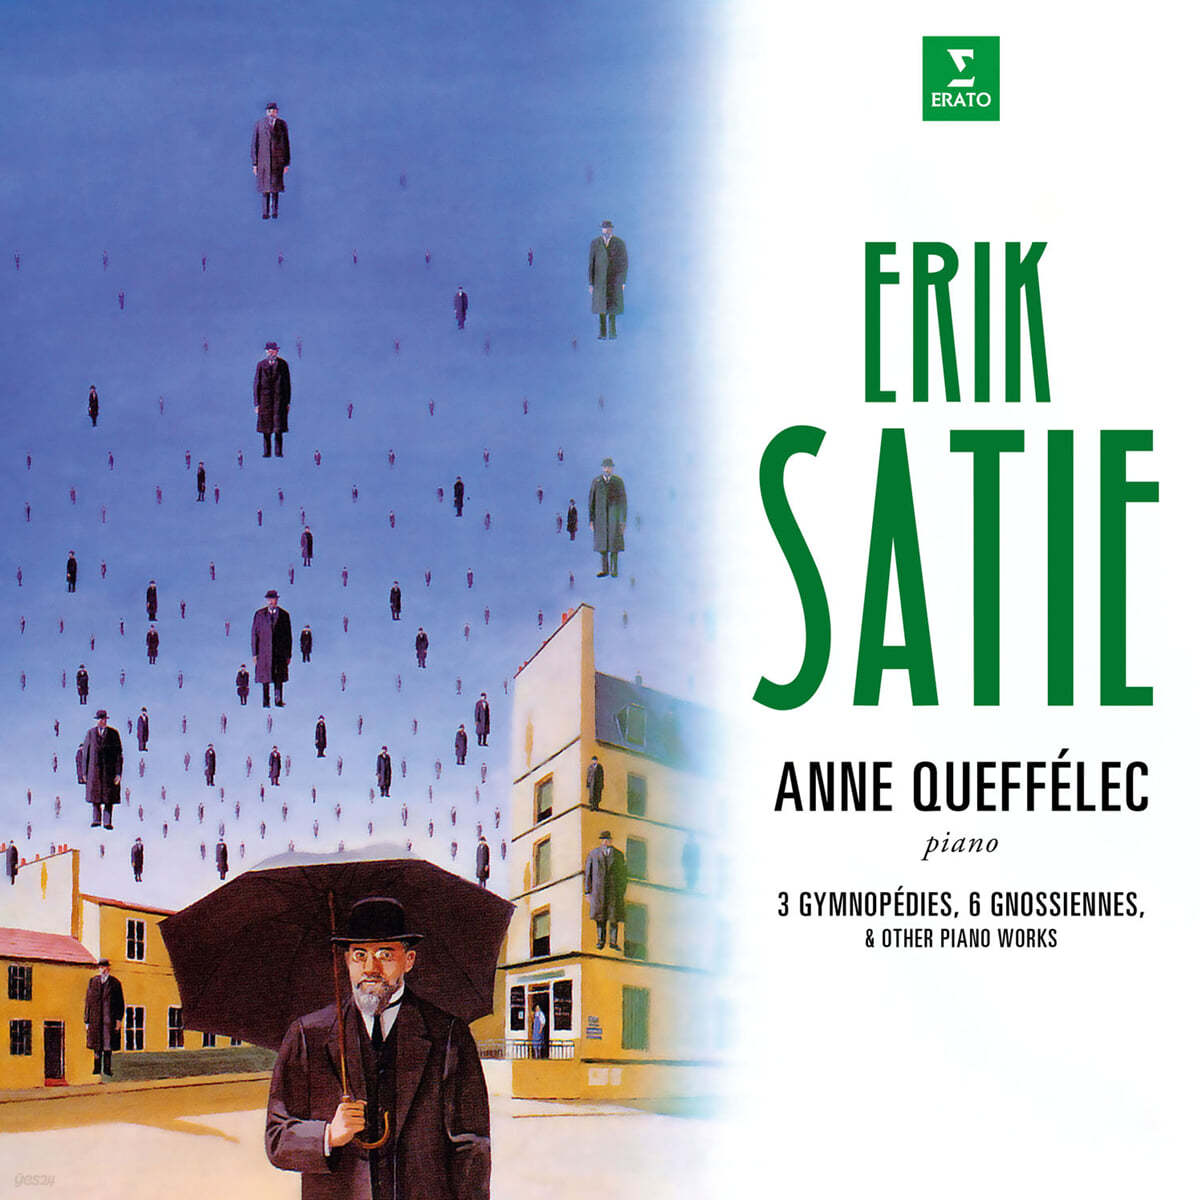 Anne Queffelec 에릭 사티: 짐노페디, 그노시엔느 (Eric Satie: 3 Gymnopedies, 6 Gnossiennes) [2LP] 